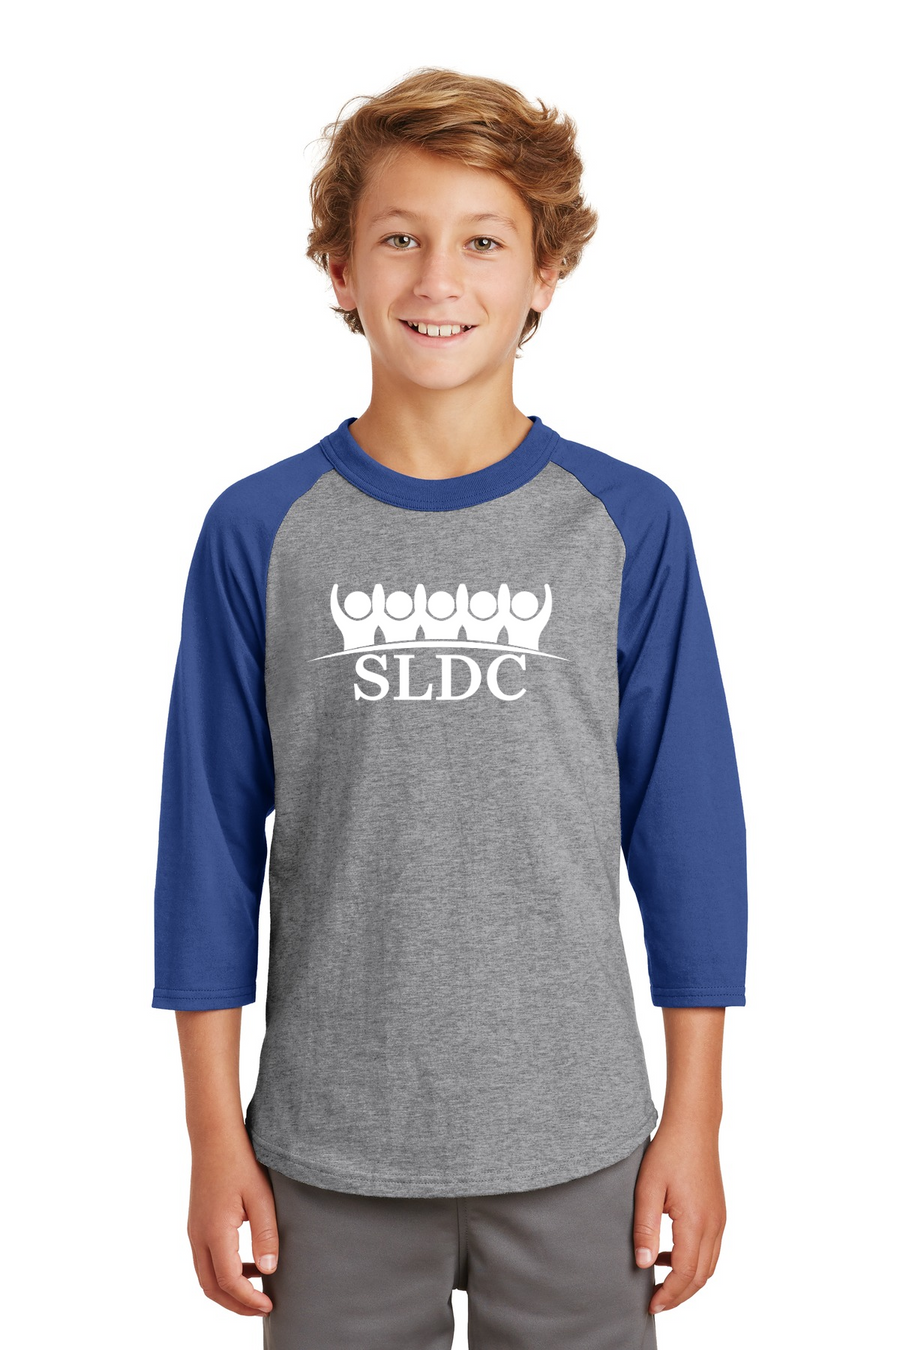 SLDC Spirit Wear On-Demand-Unisex Baseball Tee White SLDC Logo